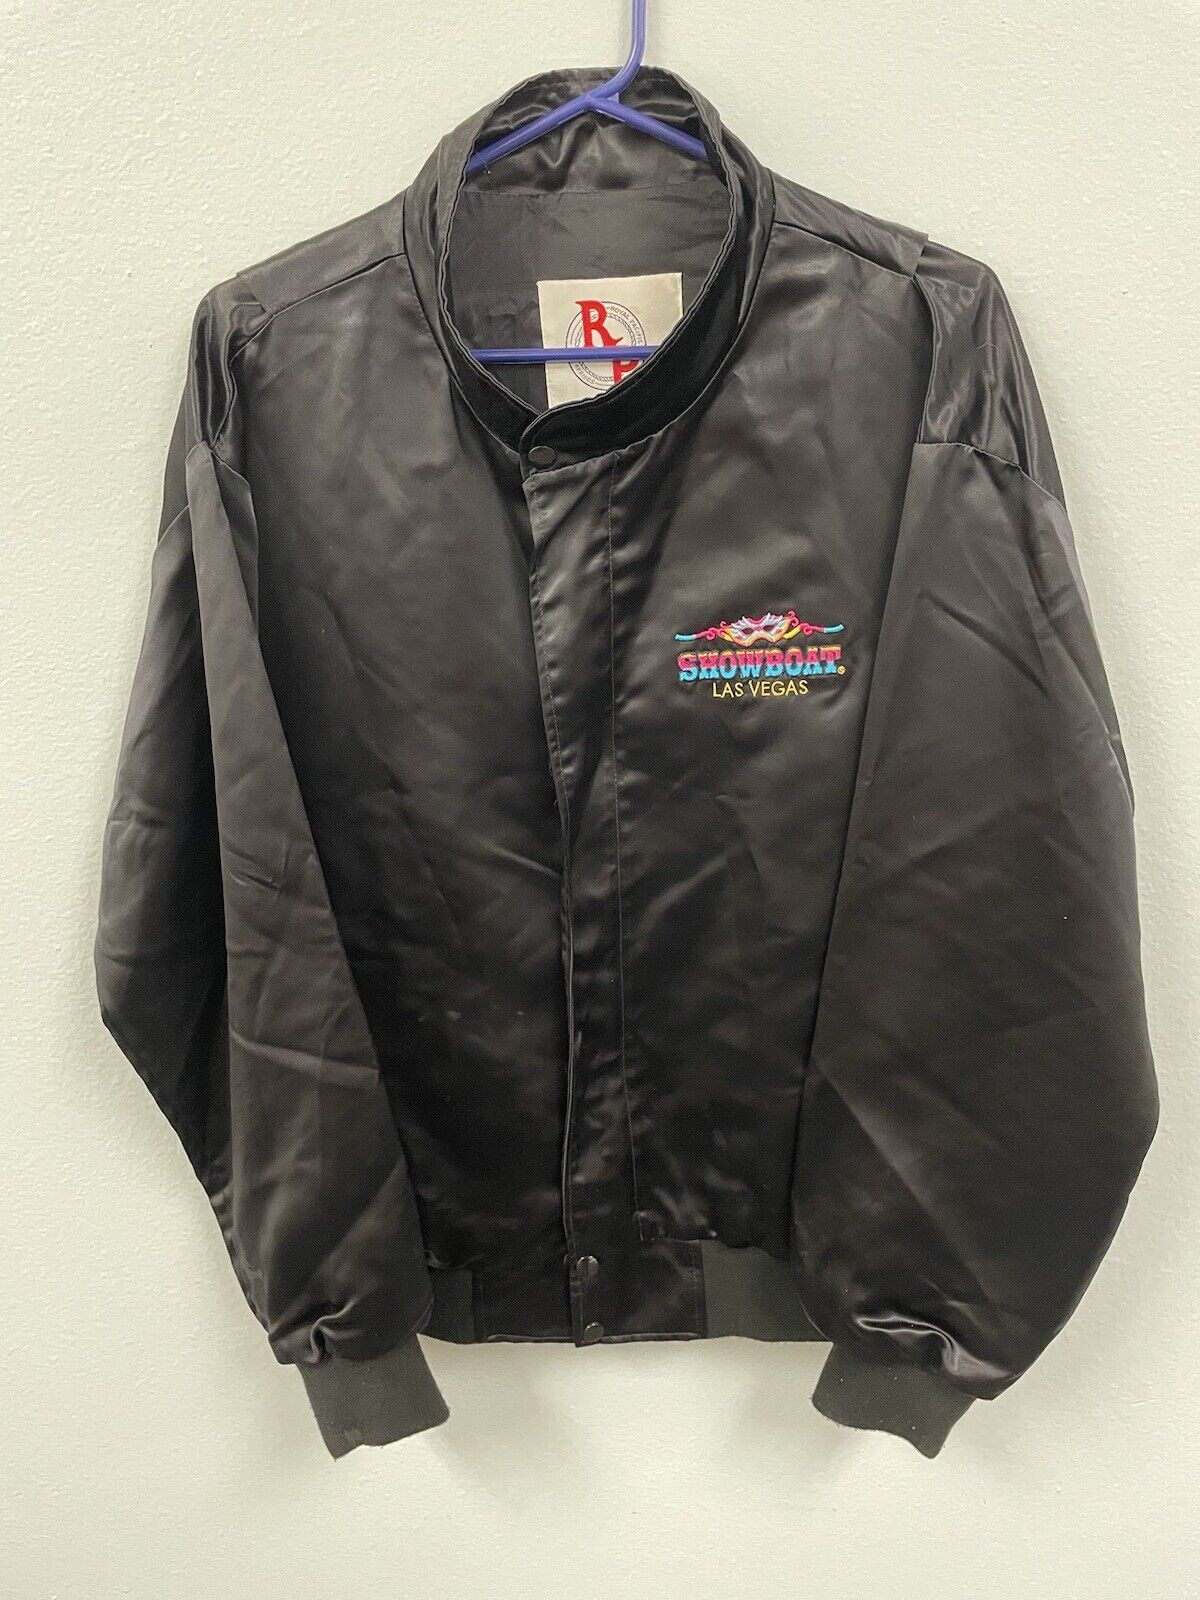 Vintage Showboat Las Vegas jacket.  Large.  Excellent condition.